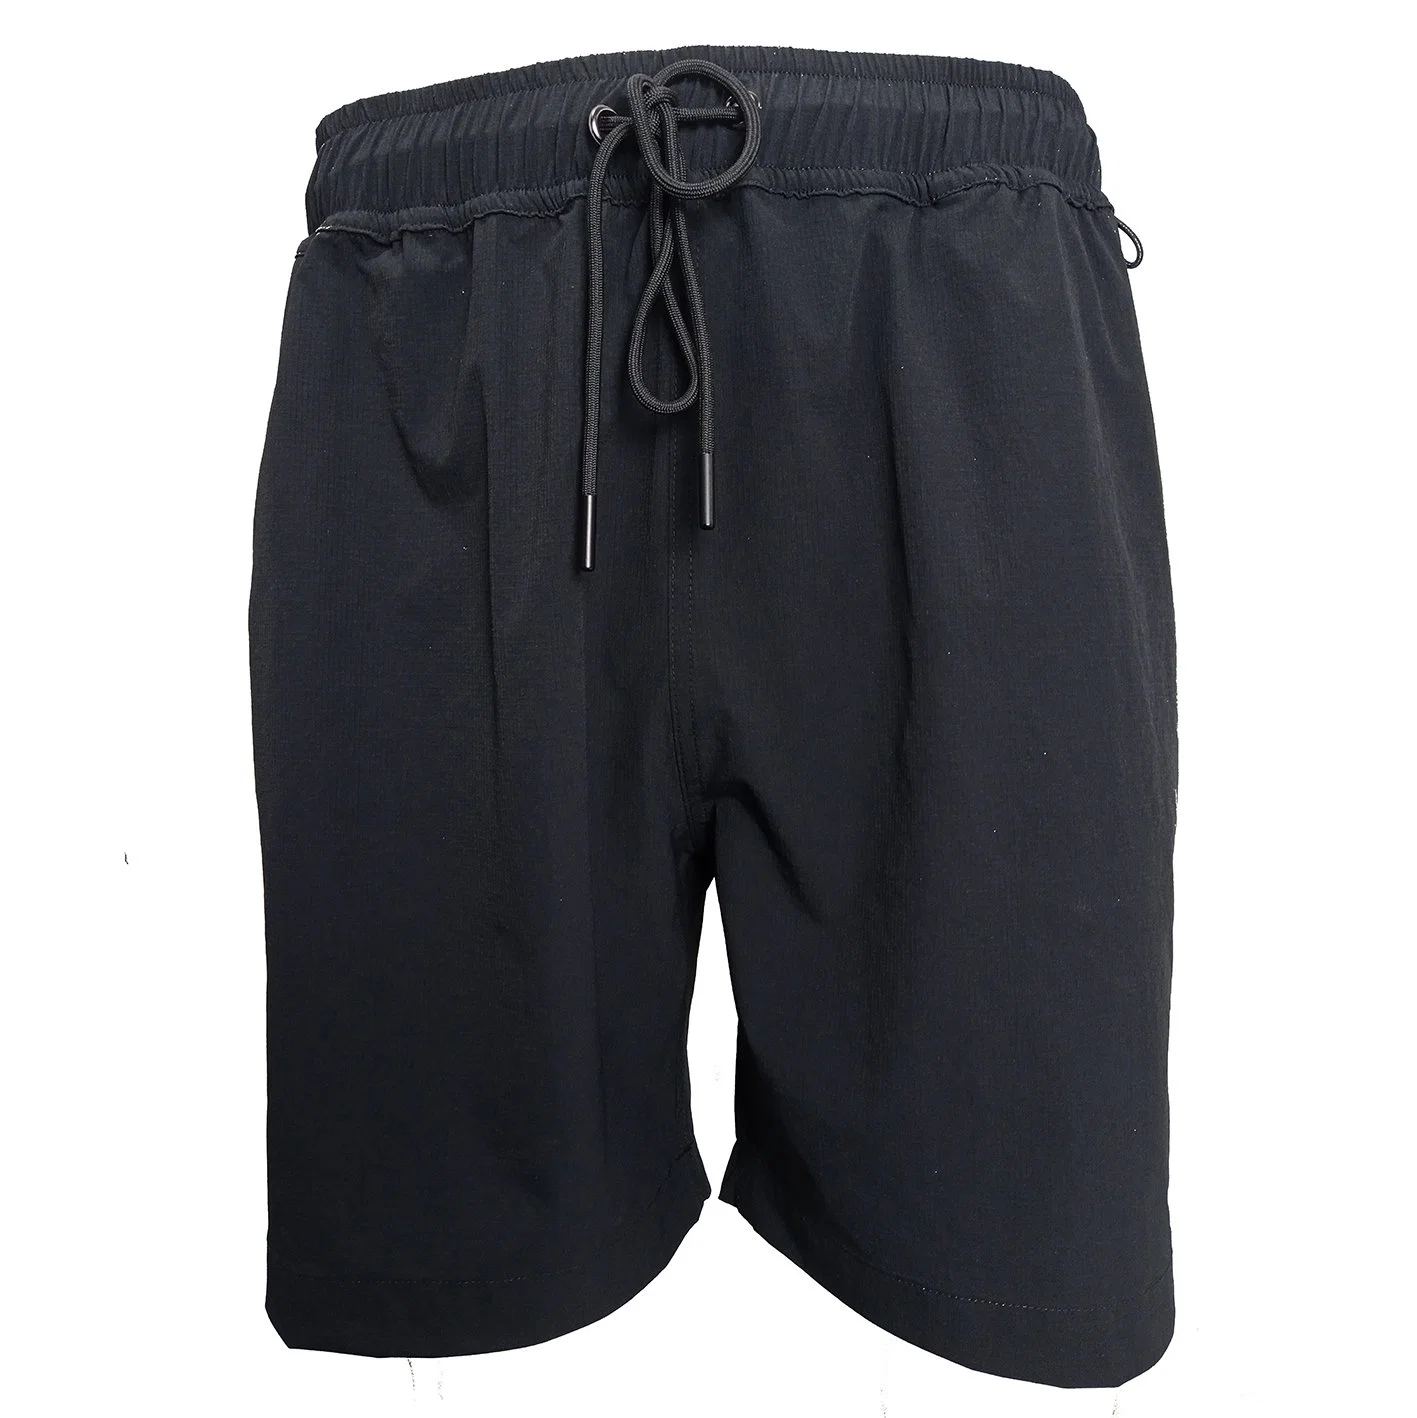 Shorts de bain imprimés par sublimation avec poches magnétiques, fournisseur de shorts de plage extensibles dans 4 directions et confortables, parfaits pour la natation et la pêche.